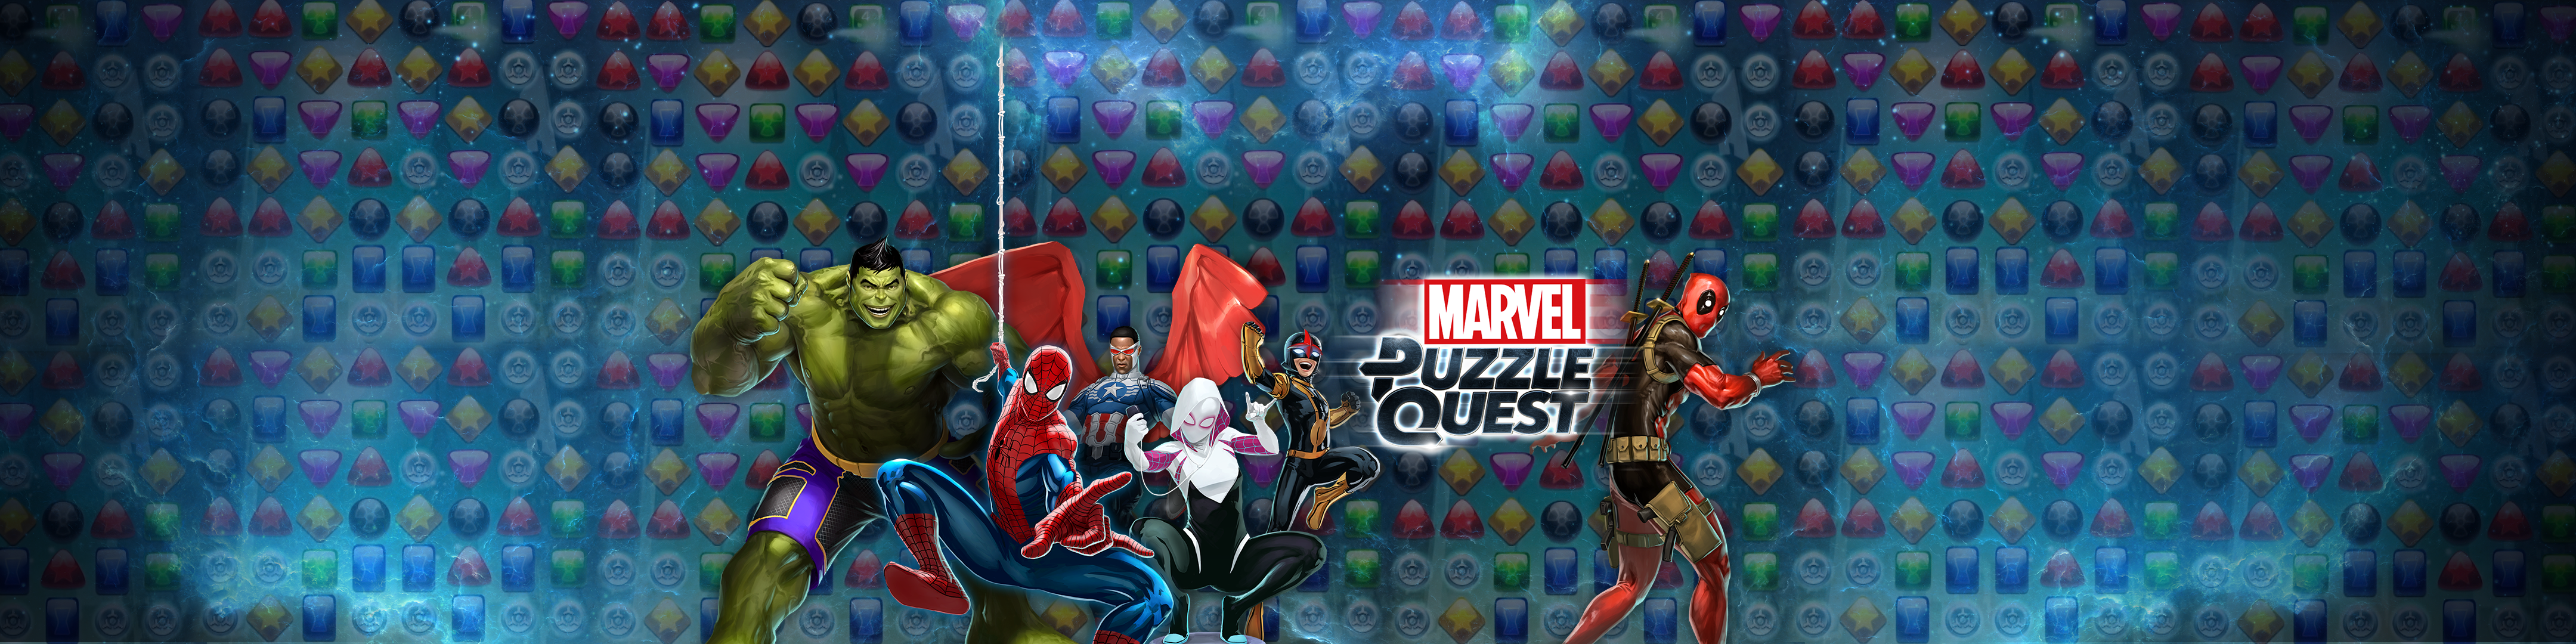 Marvel Puzzle Quest Hero Rpg Revenue Download Estimates